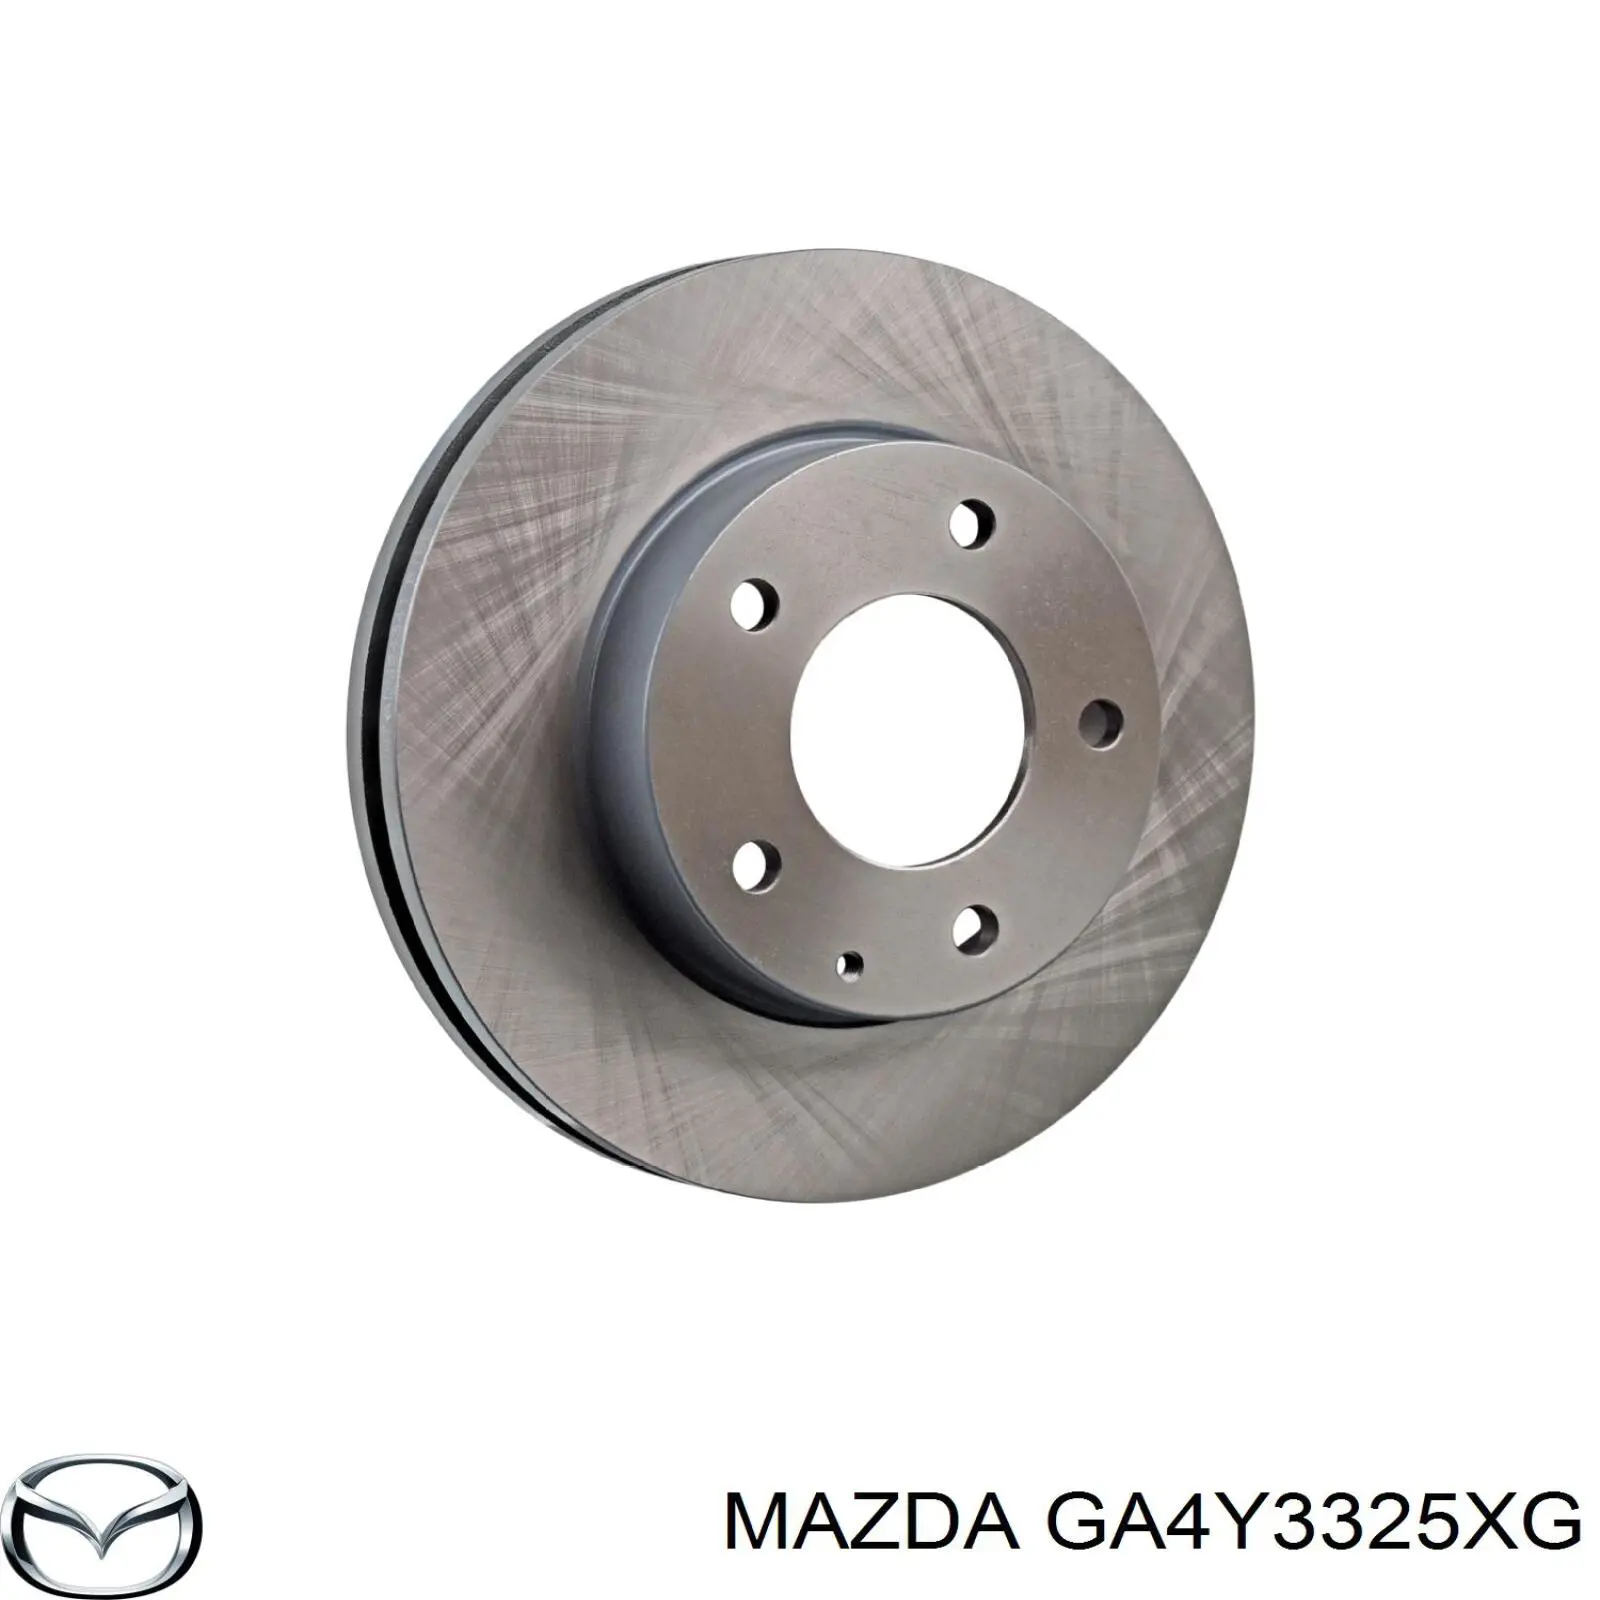 GA4Y 33 25XG Mazda disco de freno delantero